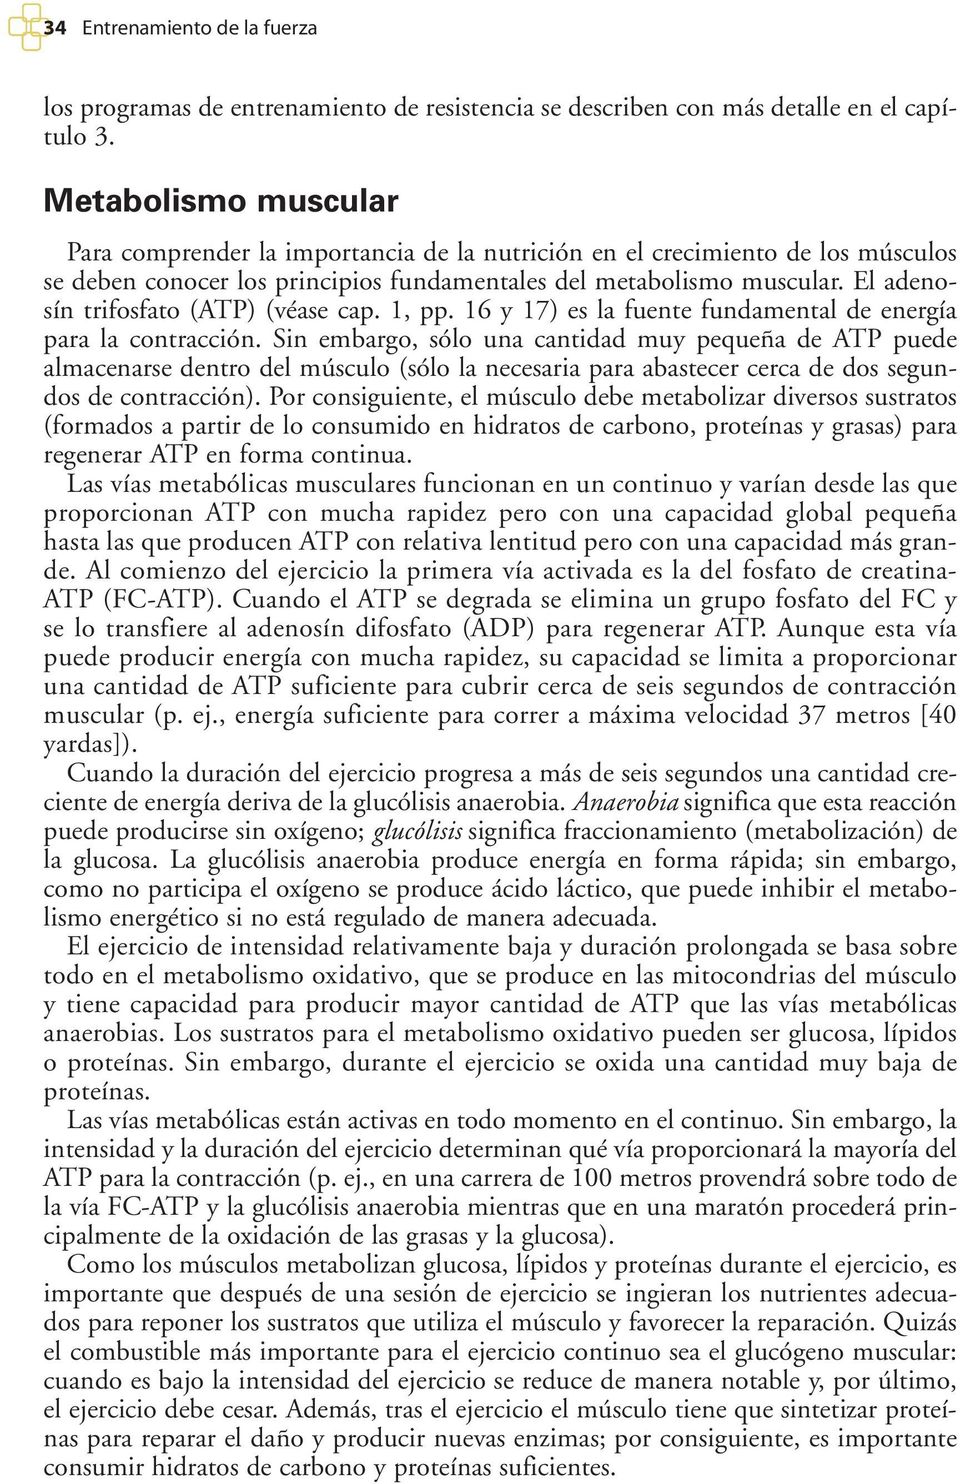 El adenosín trifosfato (ATP) (véase cap. 1, pp. 16 y 17) es la fuente fundamental de energía para la contracción.